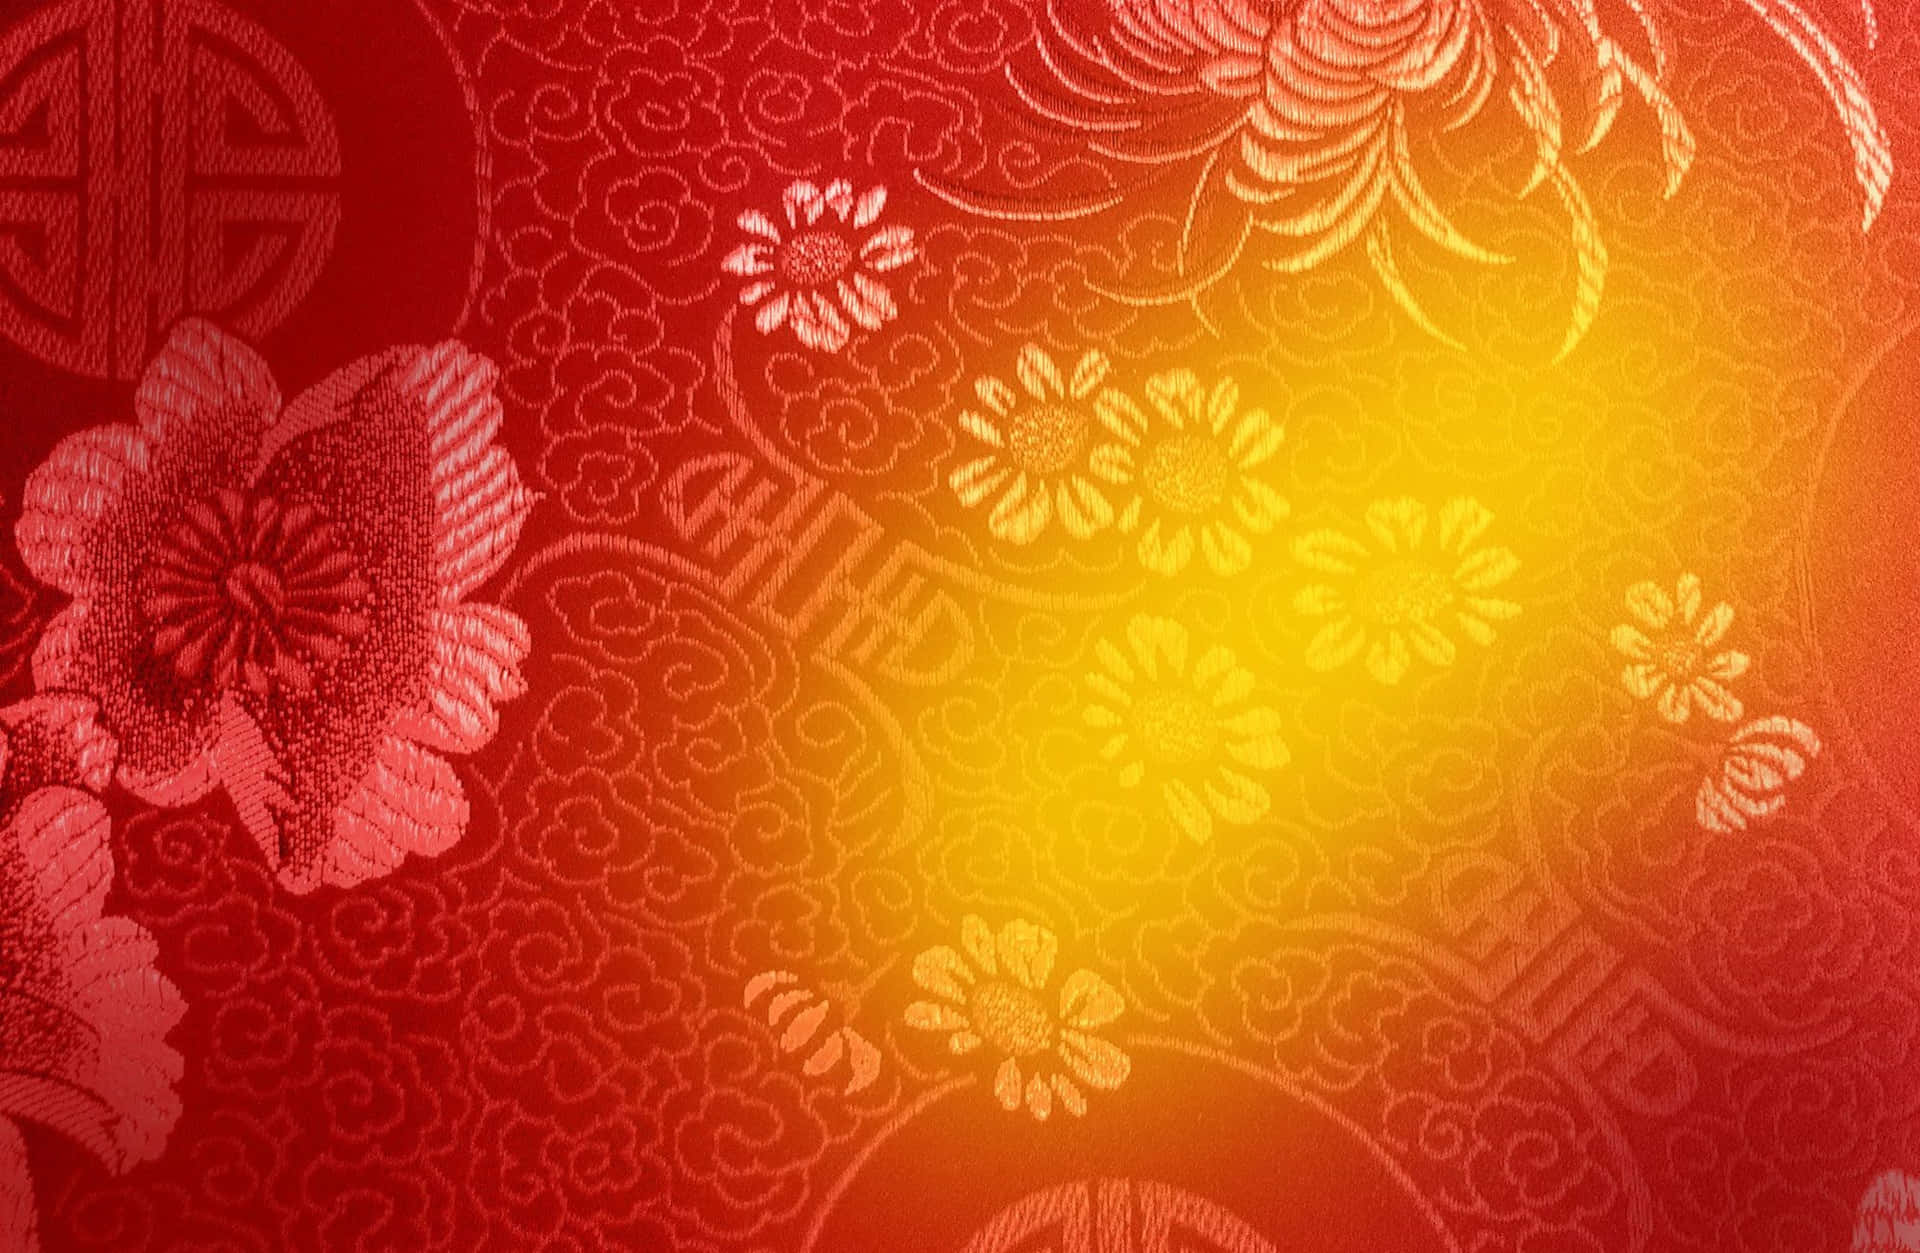 Unsimbolo Di Gioia E Prosperità - Uno Sfondo Festivo Dorato Per Il Capodanno Cinese.